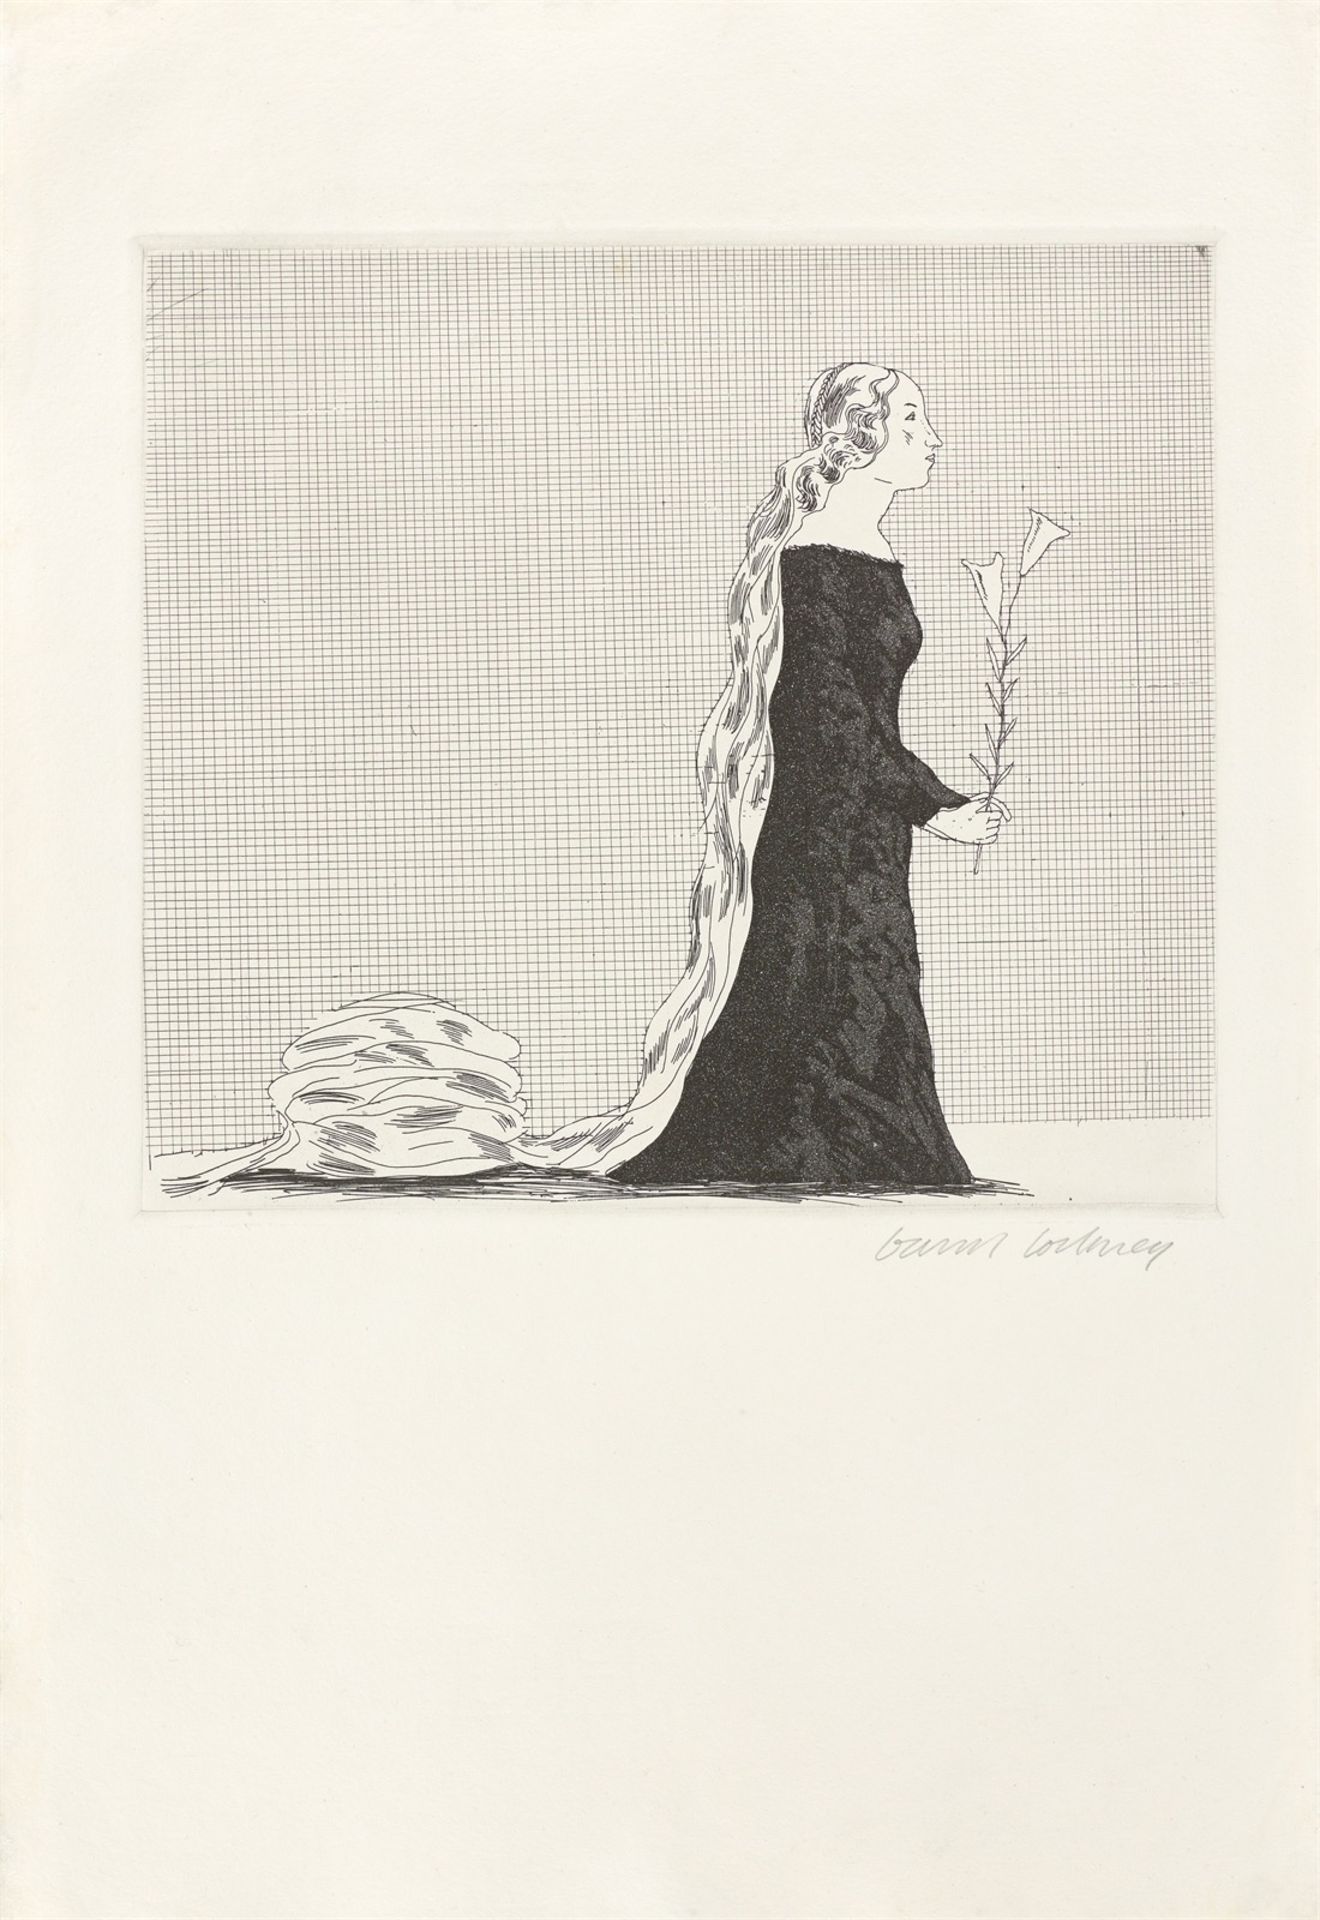 David Hockney. ”The Older Rapunzel”. 1969